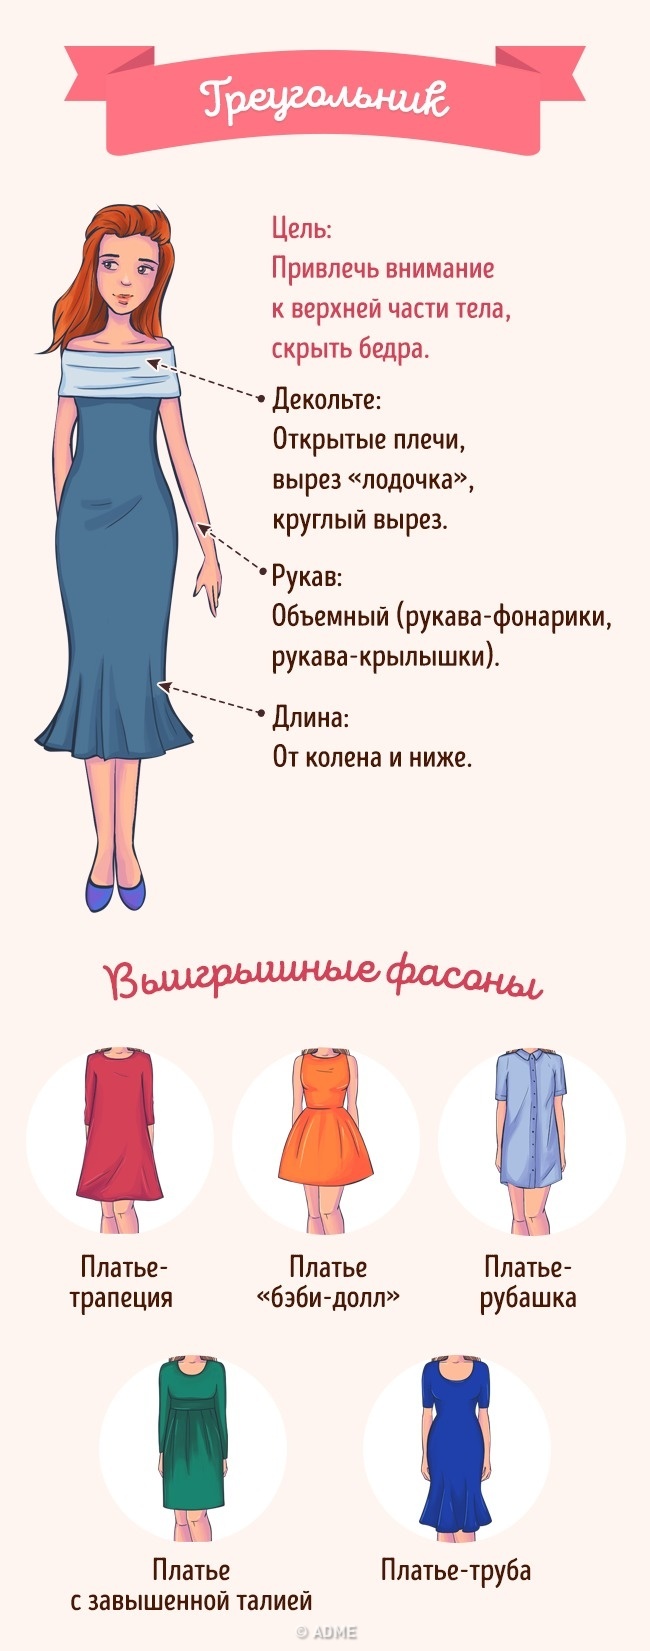 Как выбрать идеальное платье по типу фигуры женские хобби,полезные советы,рукоделие,своими руками,шитье